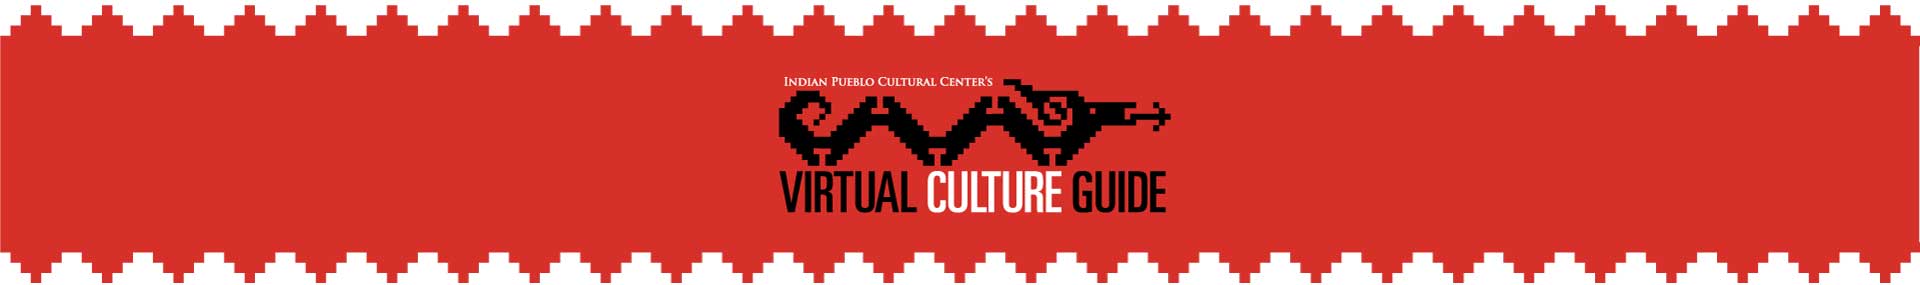 IPCC Virtual Culture Guide